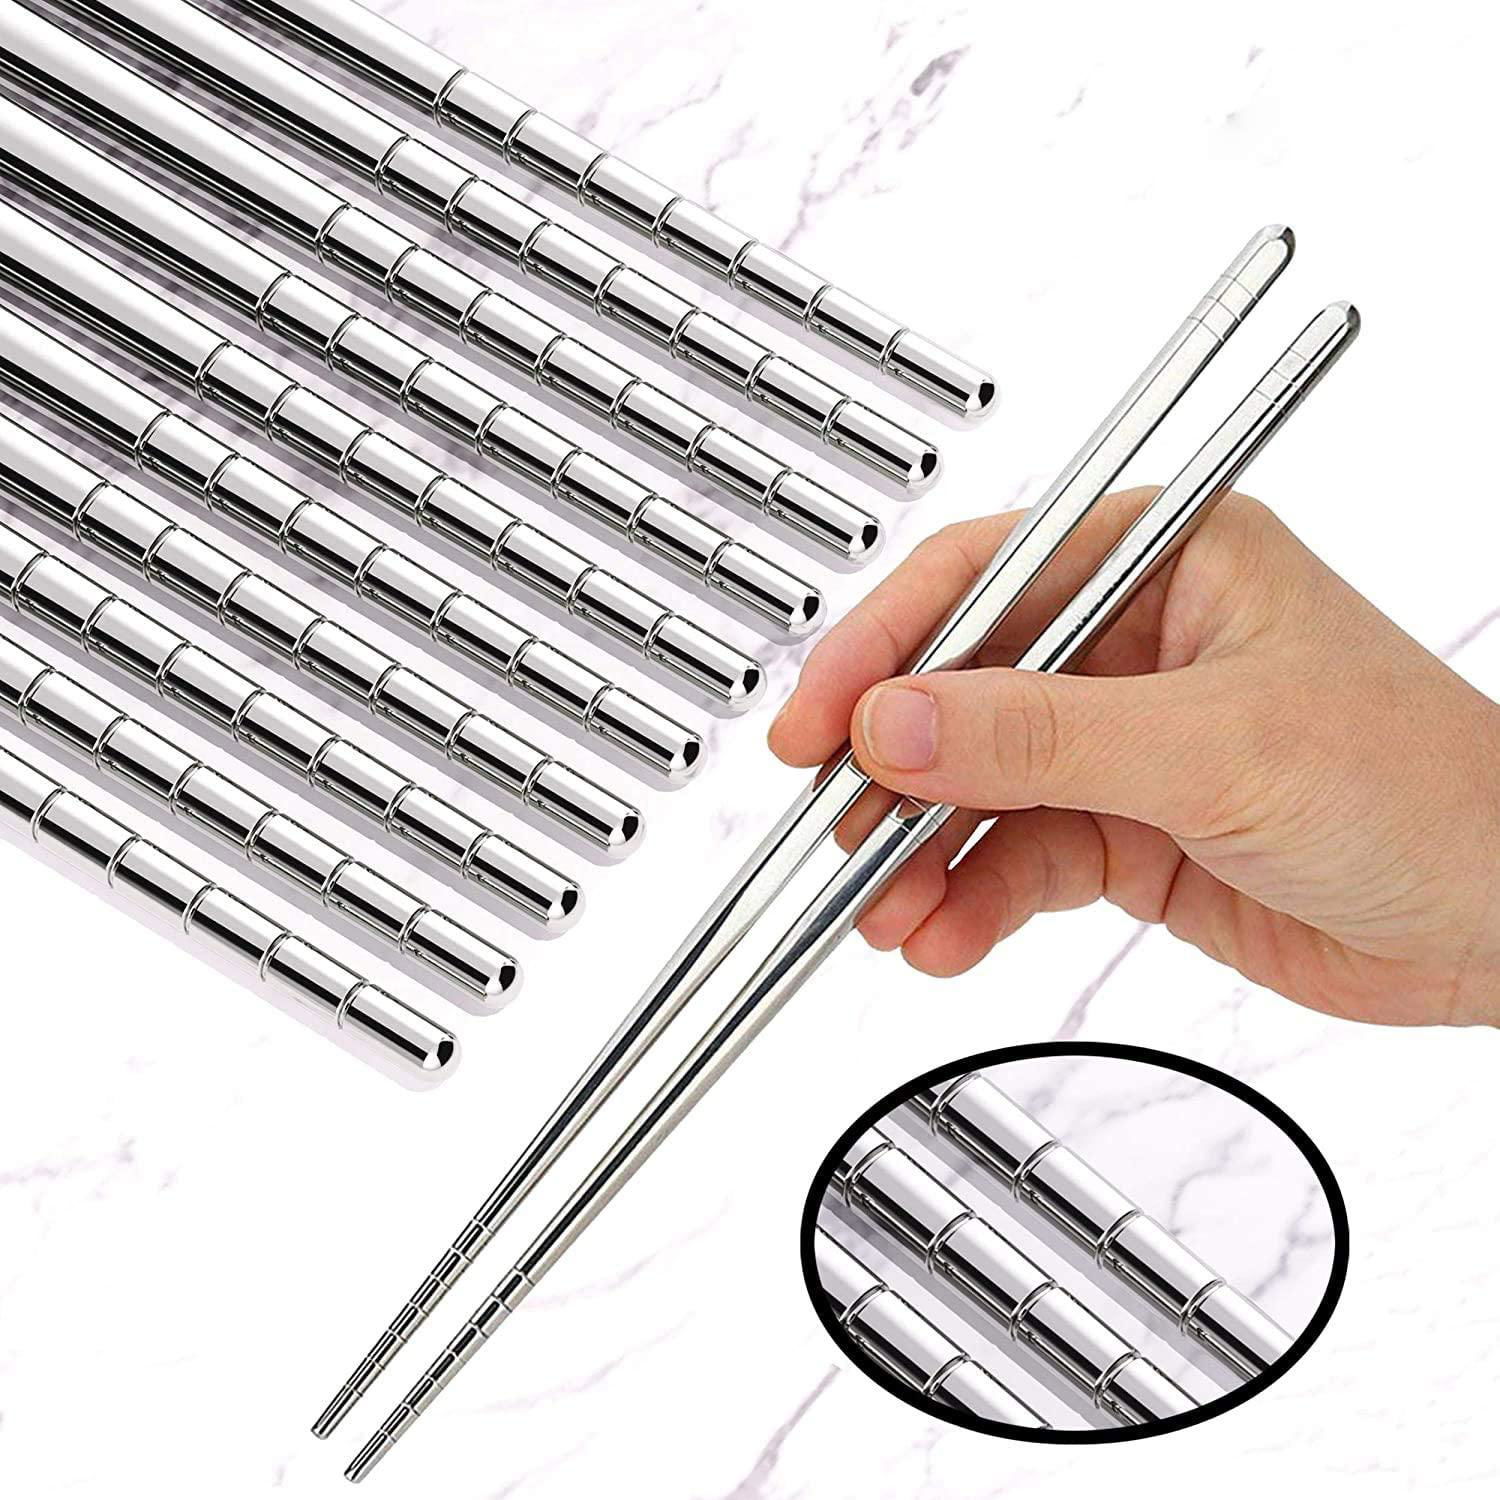 Metal Chopsticks - Stainless Steel Spiral Chopstick Non-Slip Thread Chopsticks 3